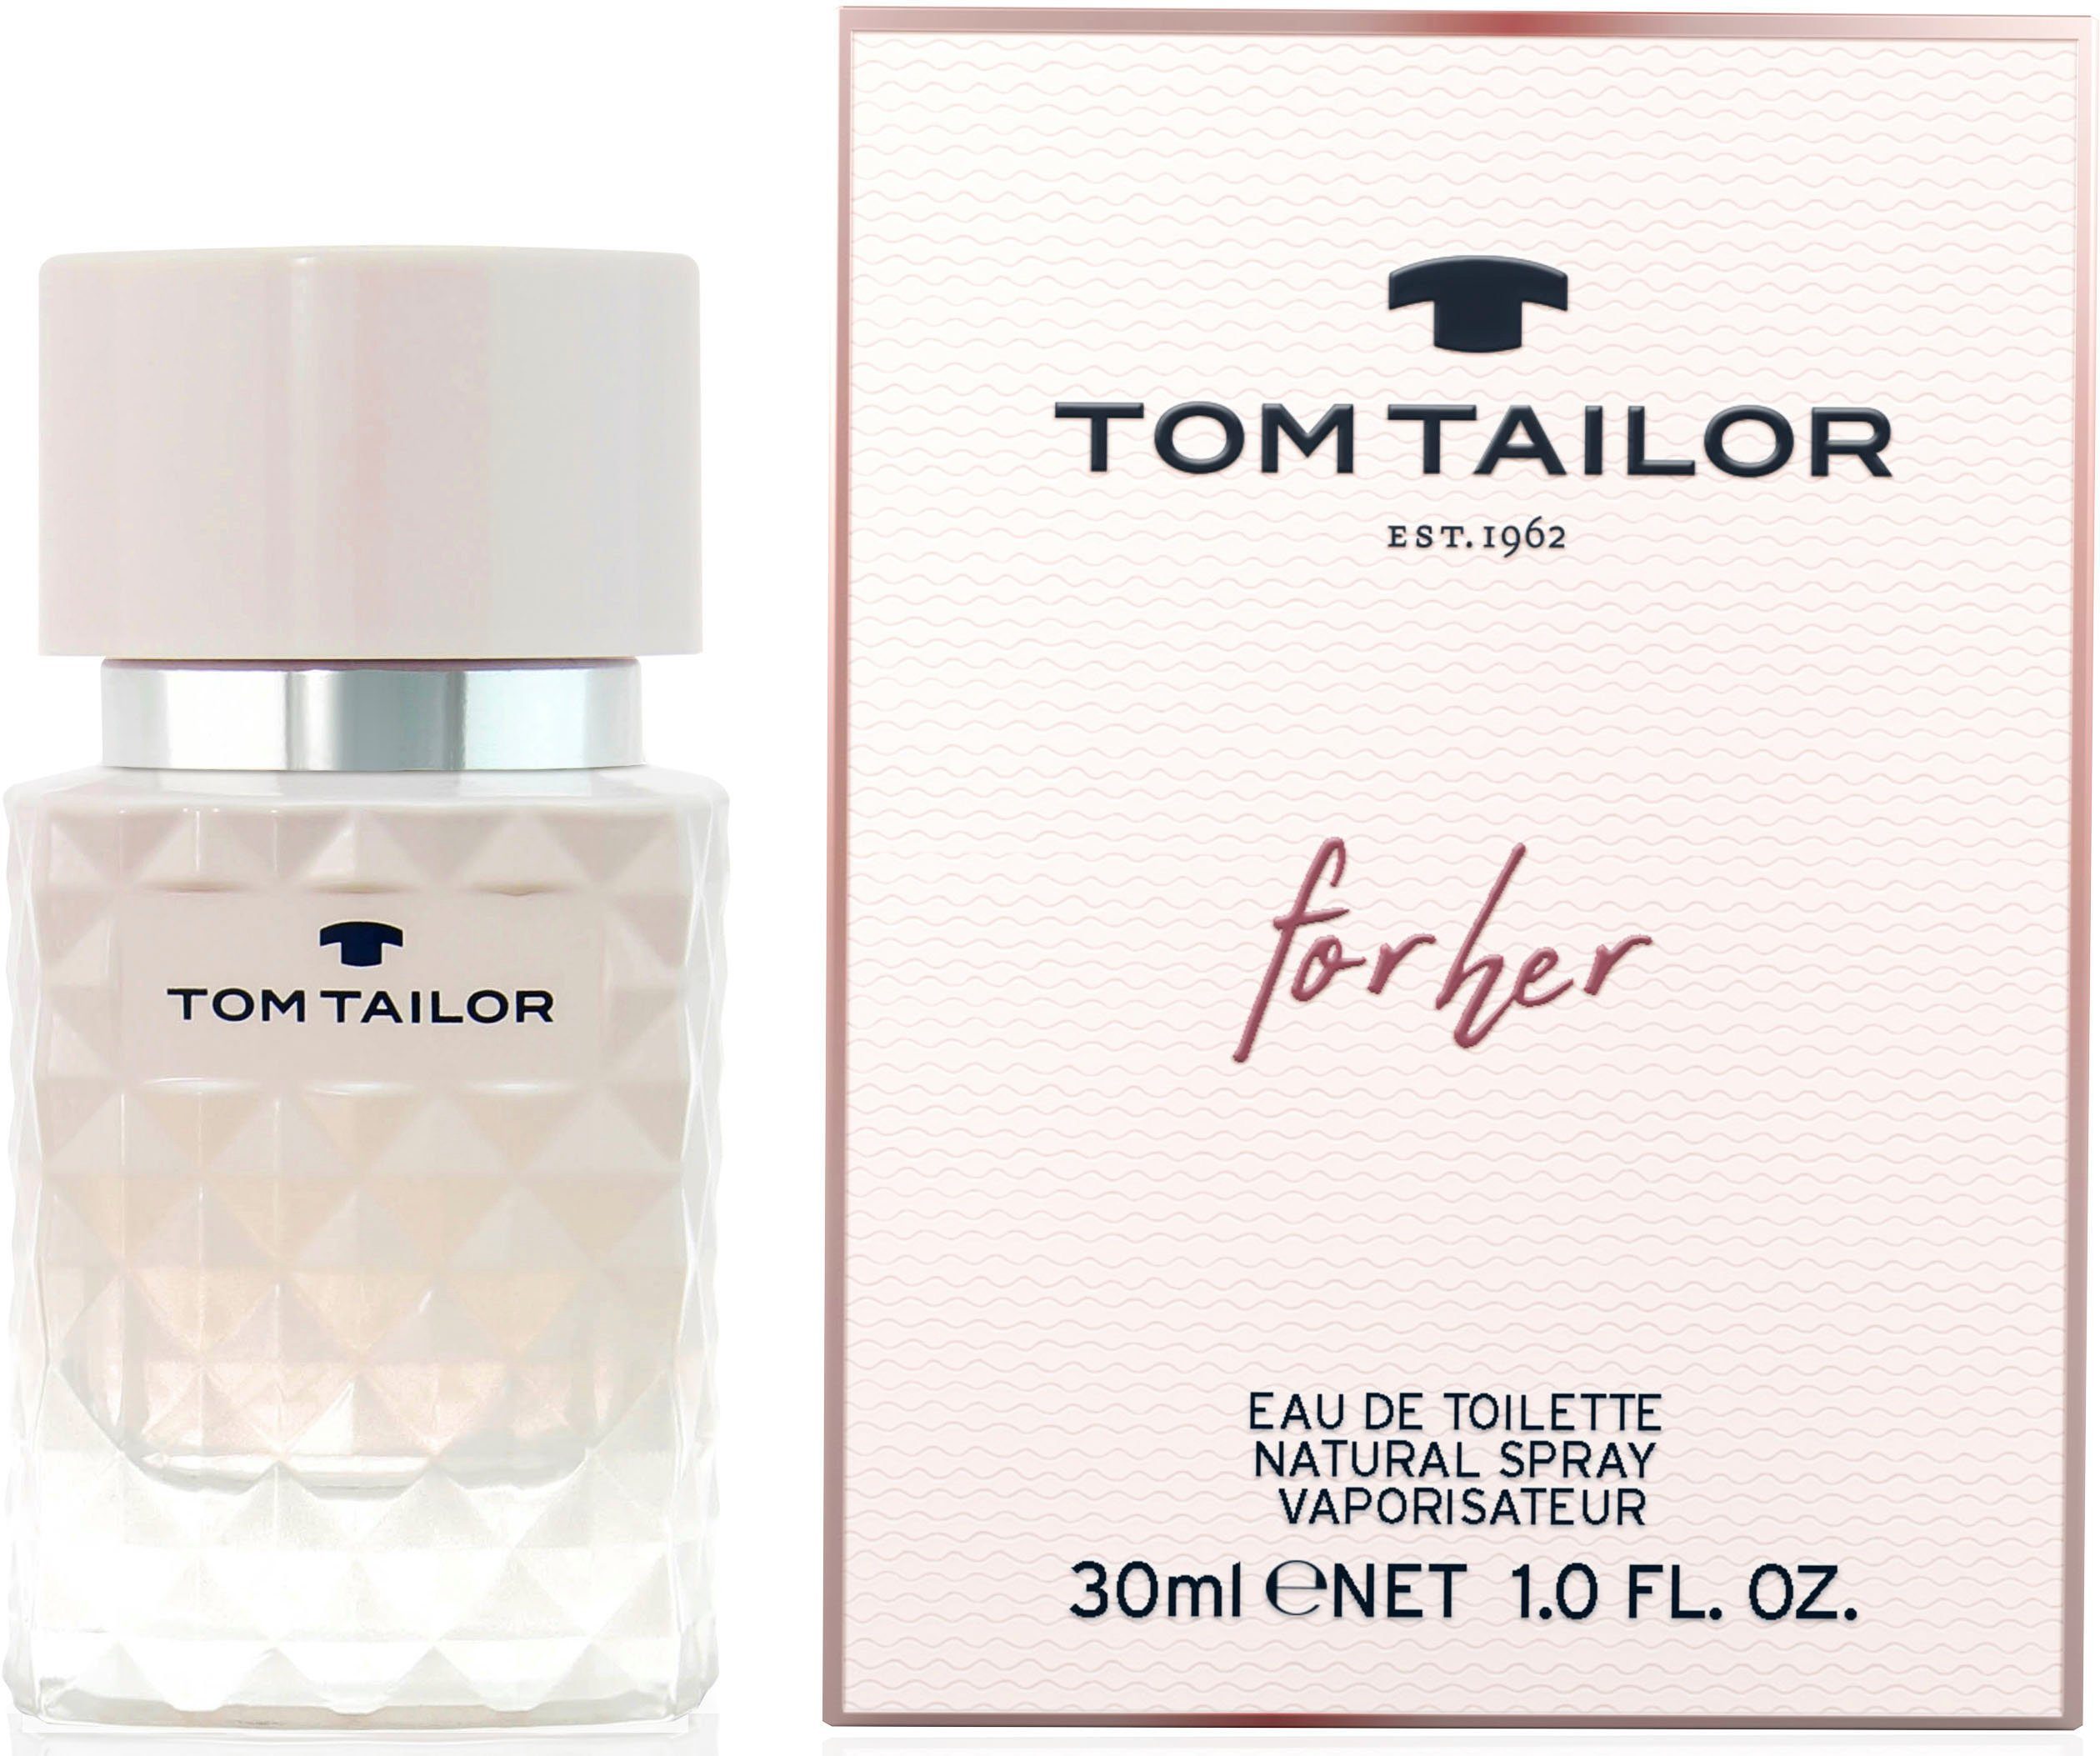 TOM TAILOR Eau de Toilette for her online kaufen | OTTO